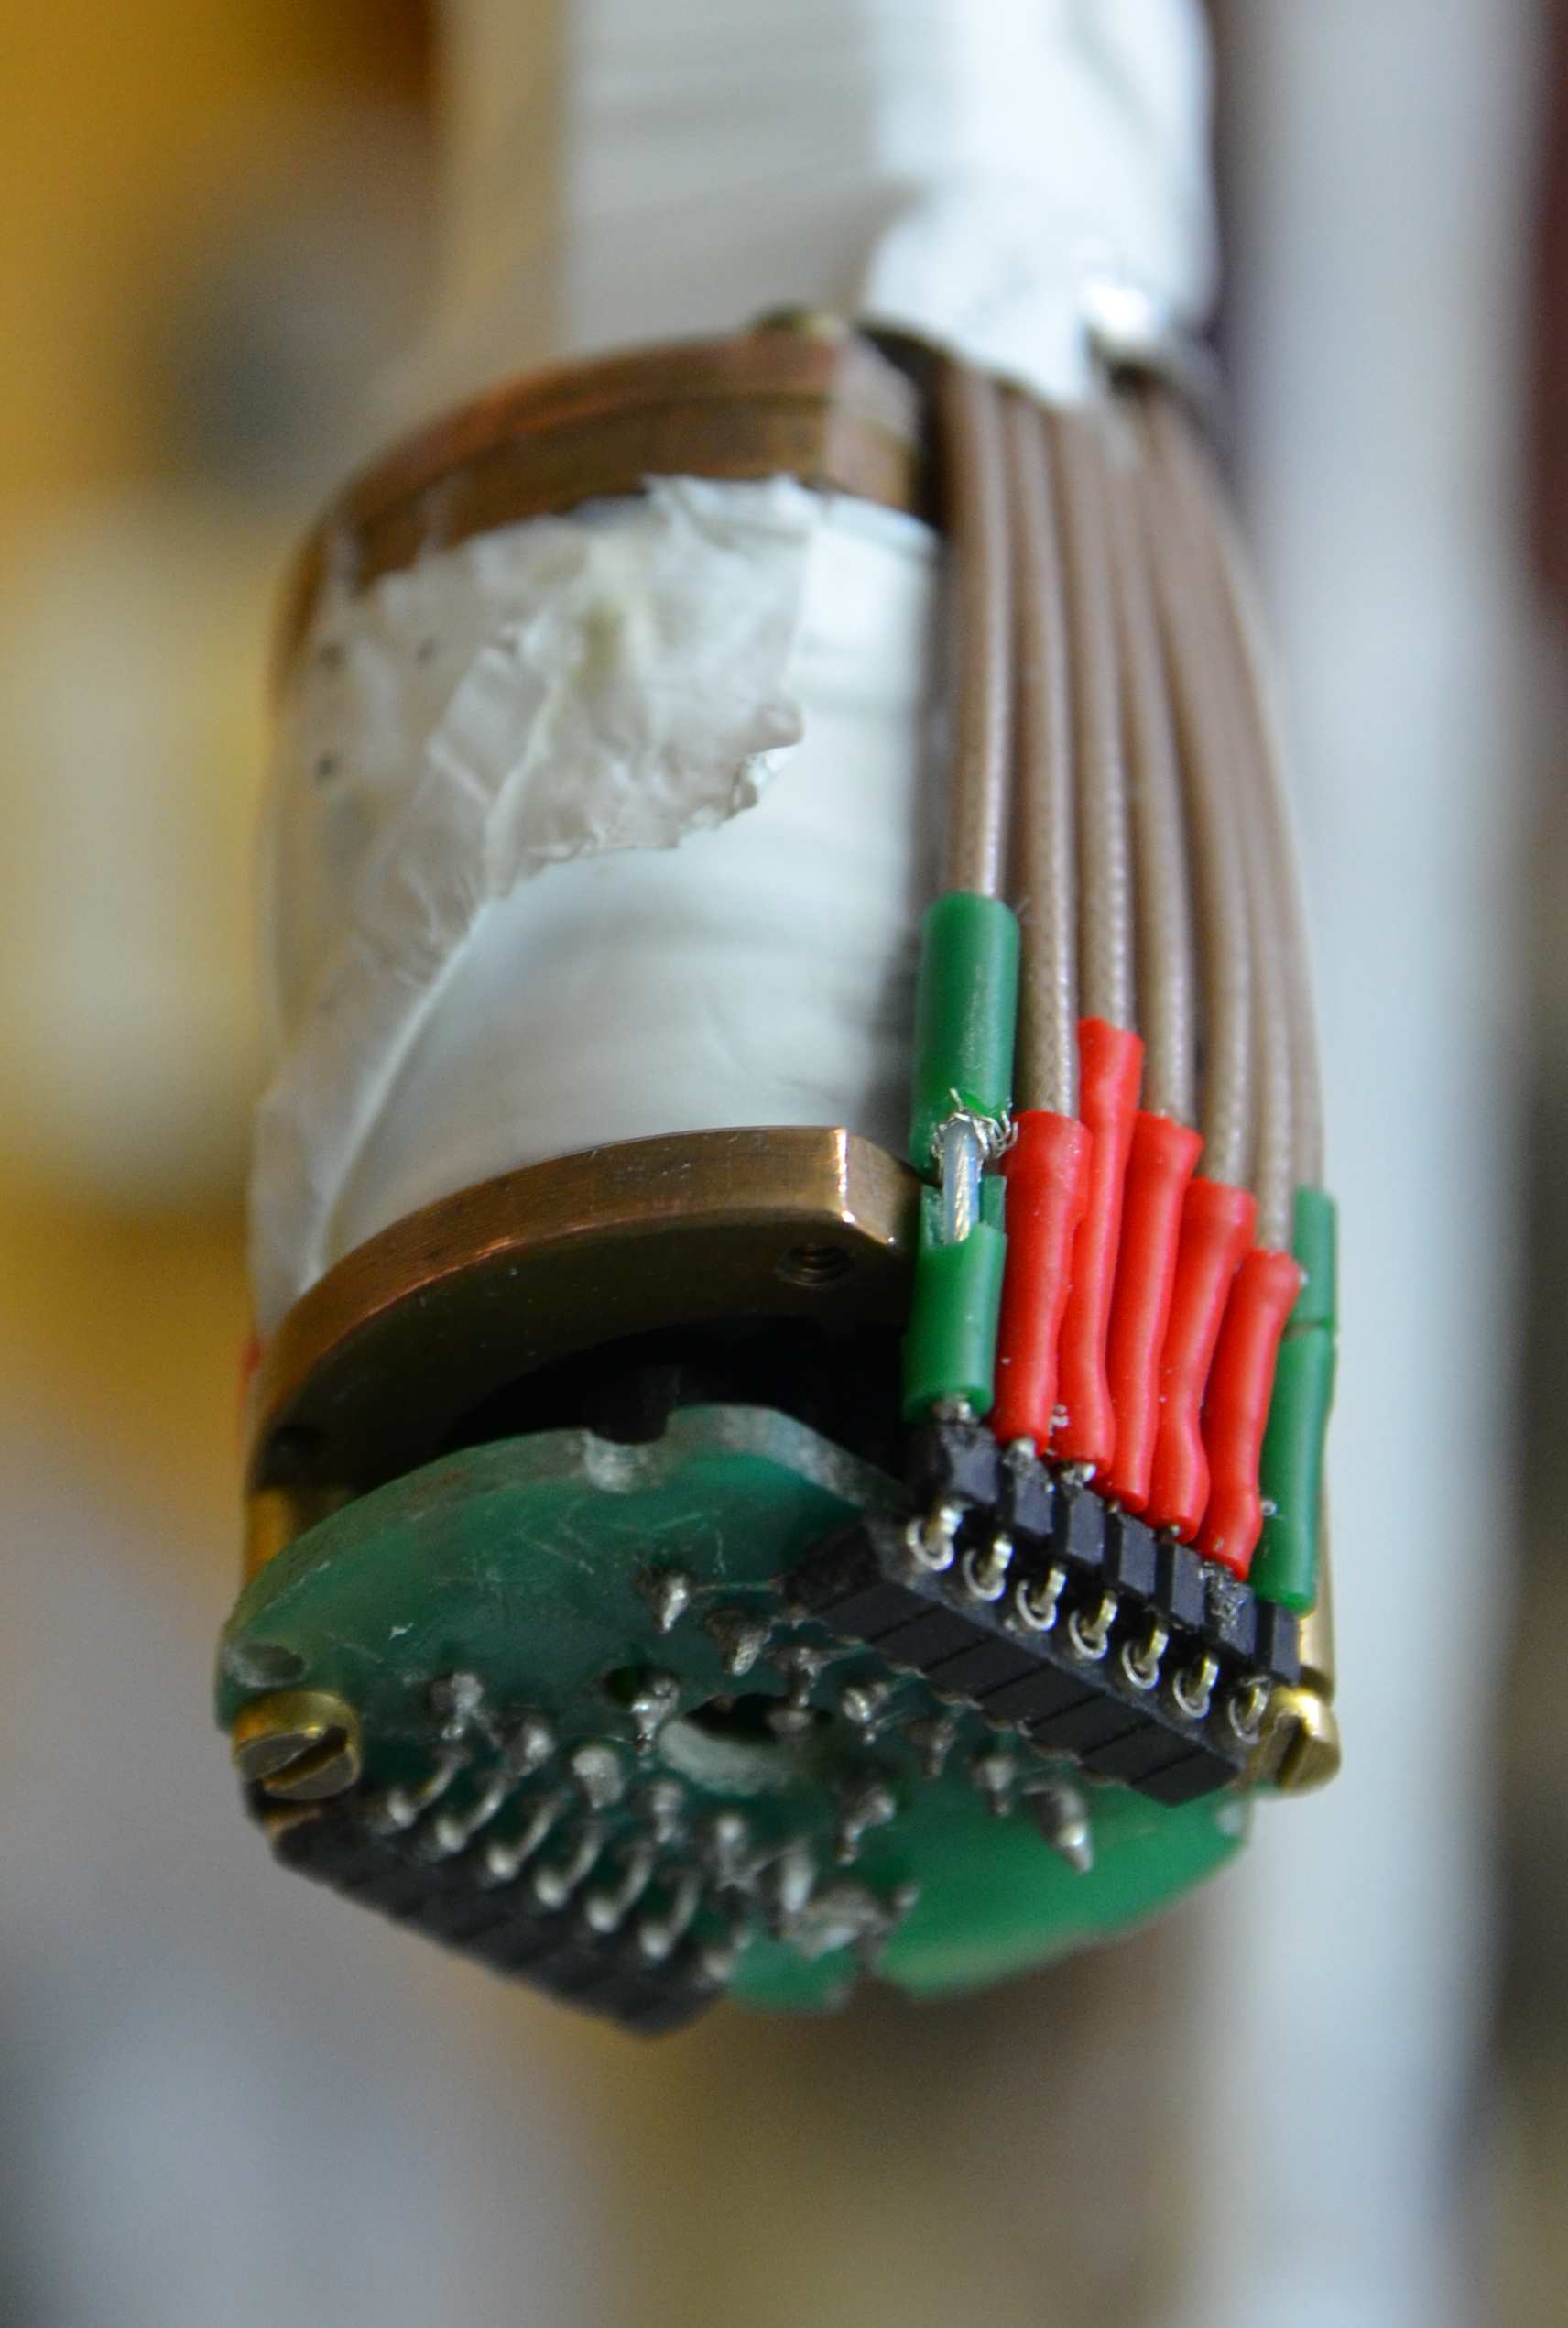 Połączenia poza kriostatem prowadzone były za pomocą kabli BNC, które łączyły uchwyt z urządzeniami pomiarowymi. Połączenia wewnątrz kriostatu poprowadzone były ekranowanymi kablami.